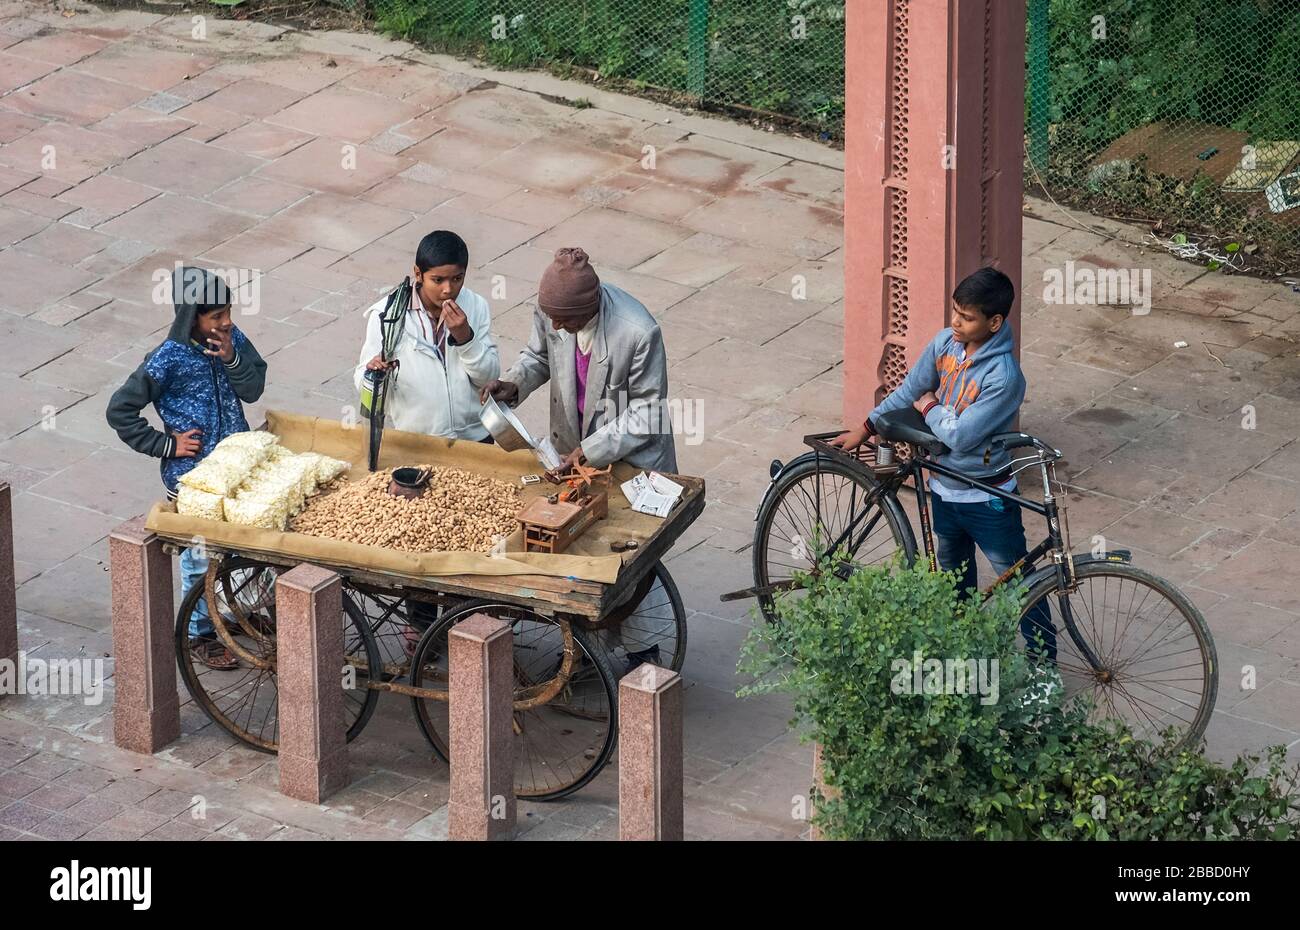 Vendeur d'arachides rôties sur une route servant des enfants indiens heureux de son pousse-pousse Banque D'Images